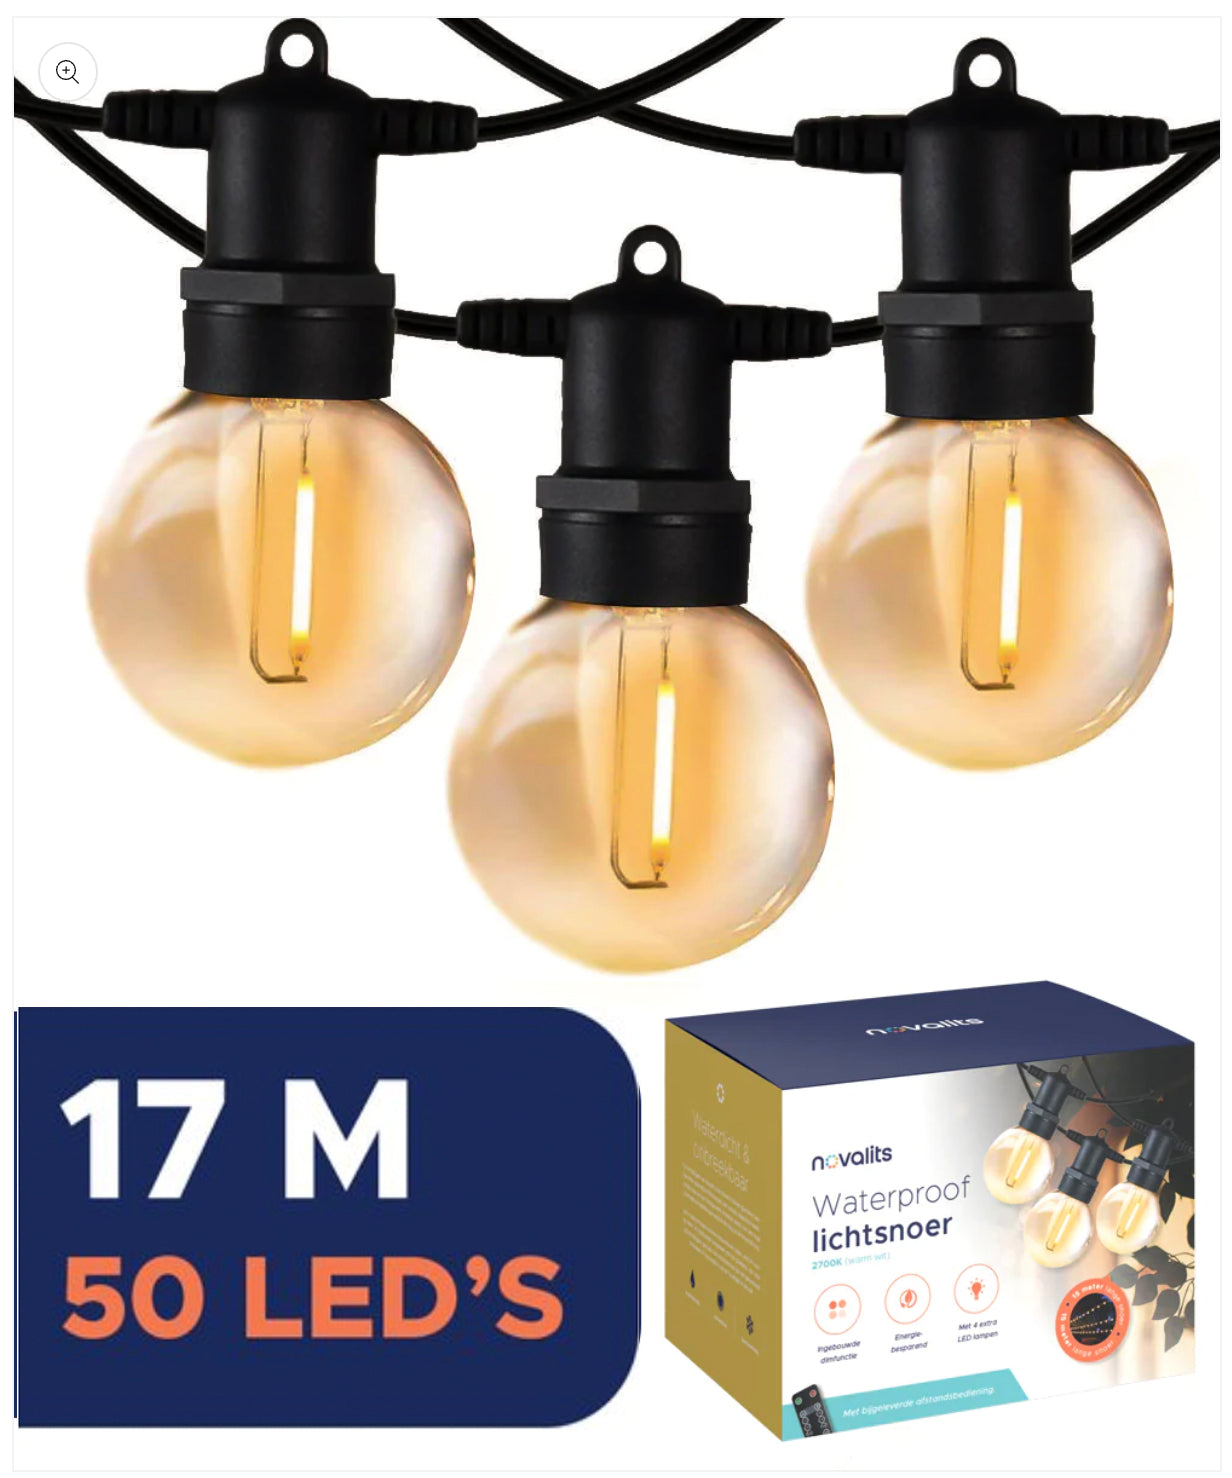 LED Lichtsnoer met Afstandbediening en Dimregelaar 50 LEDS –